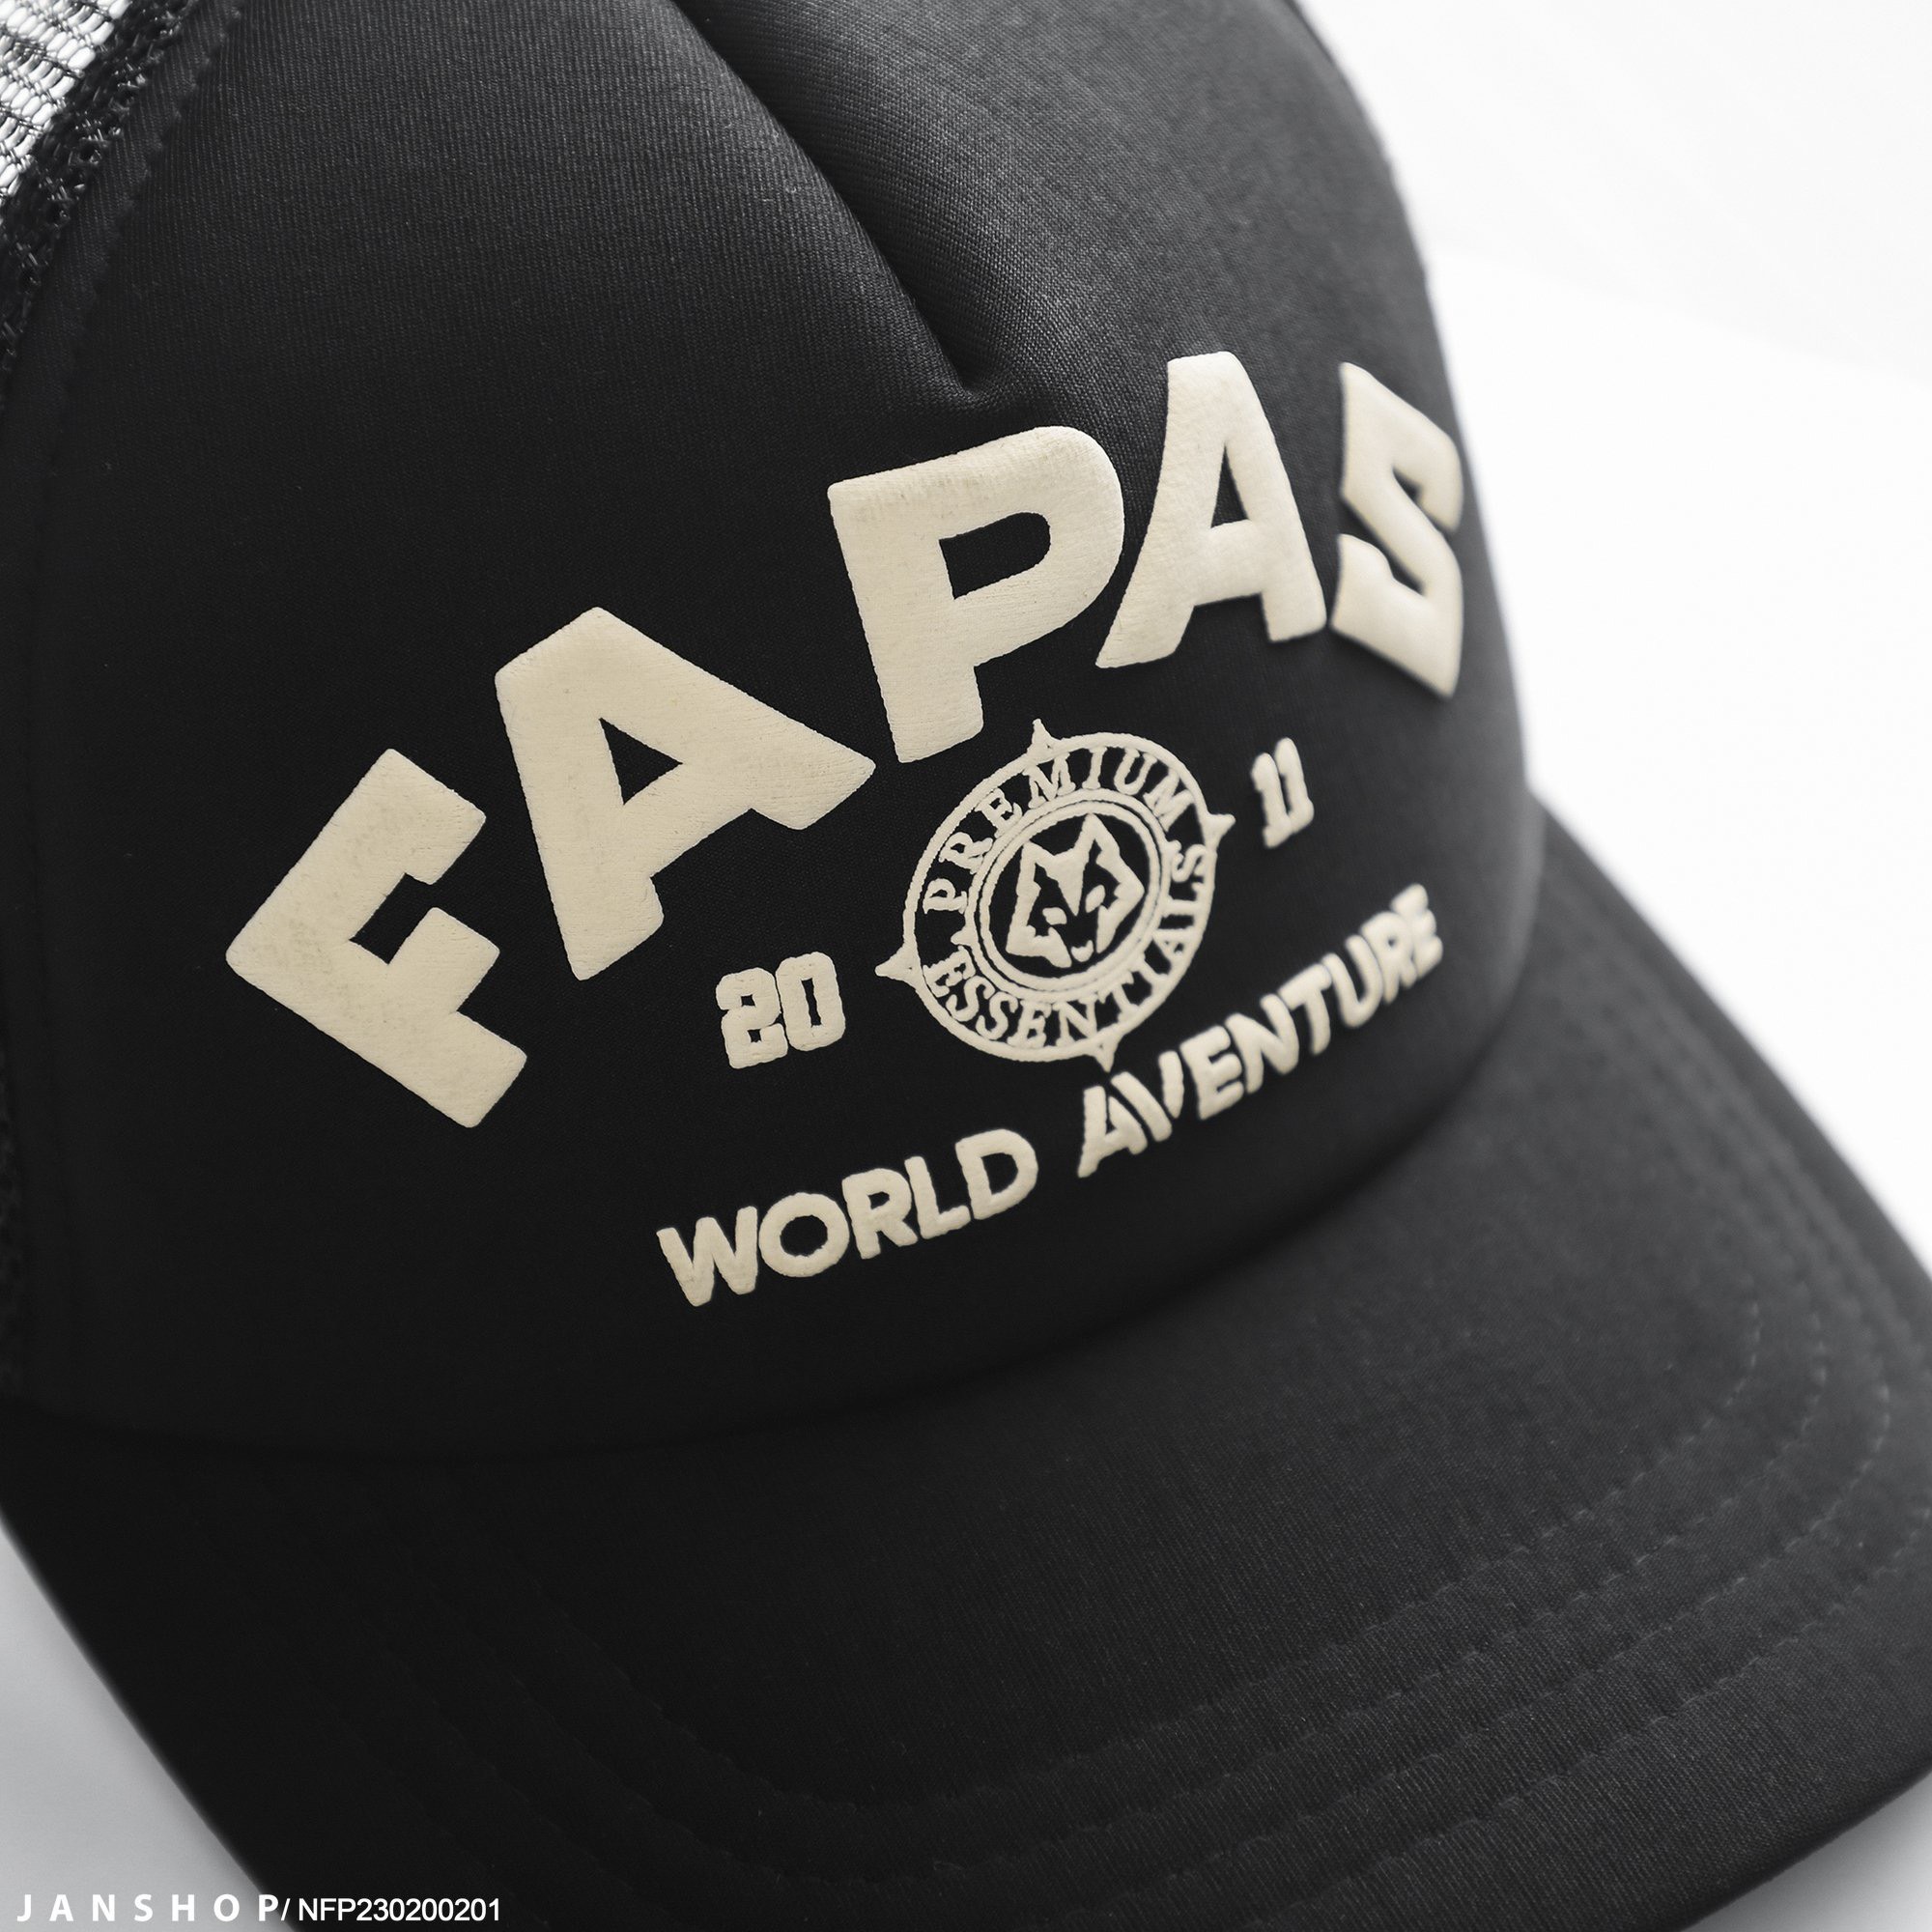 FAPAS WORD CAP